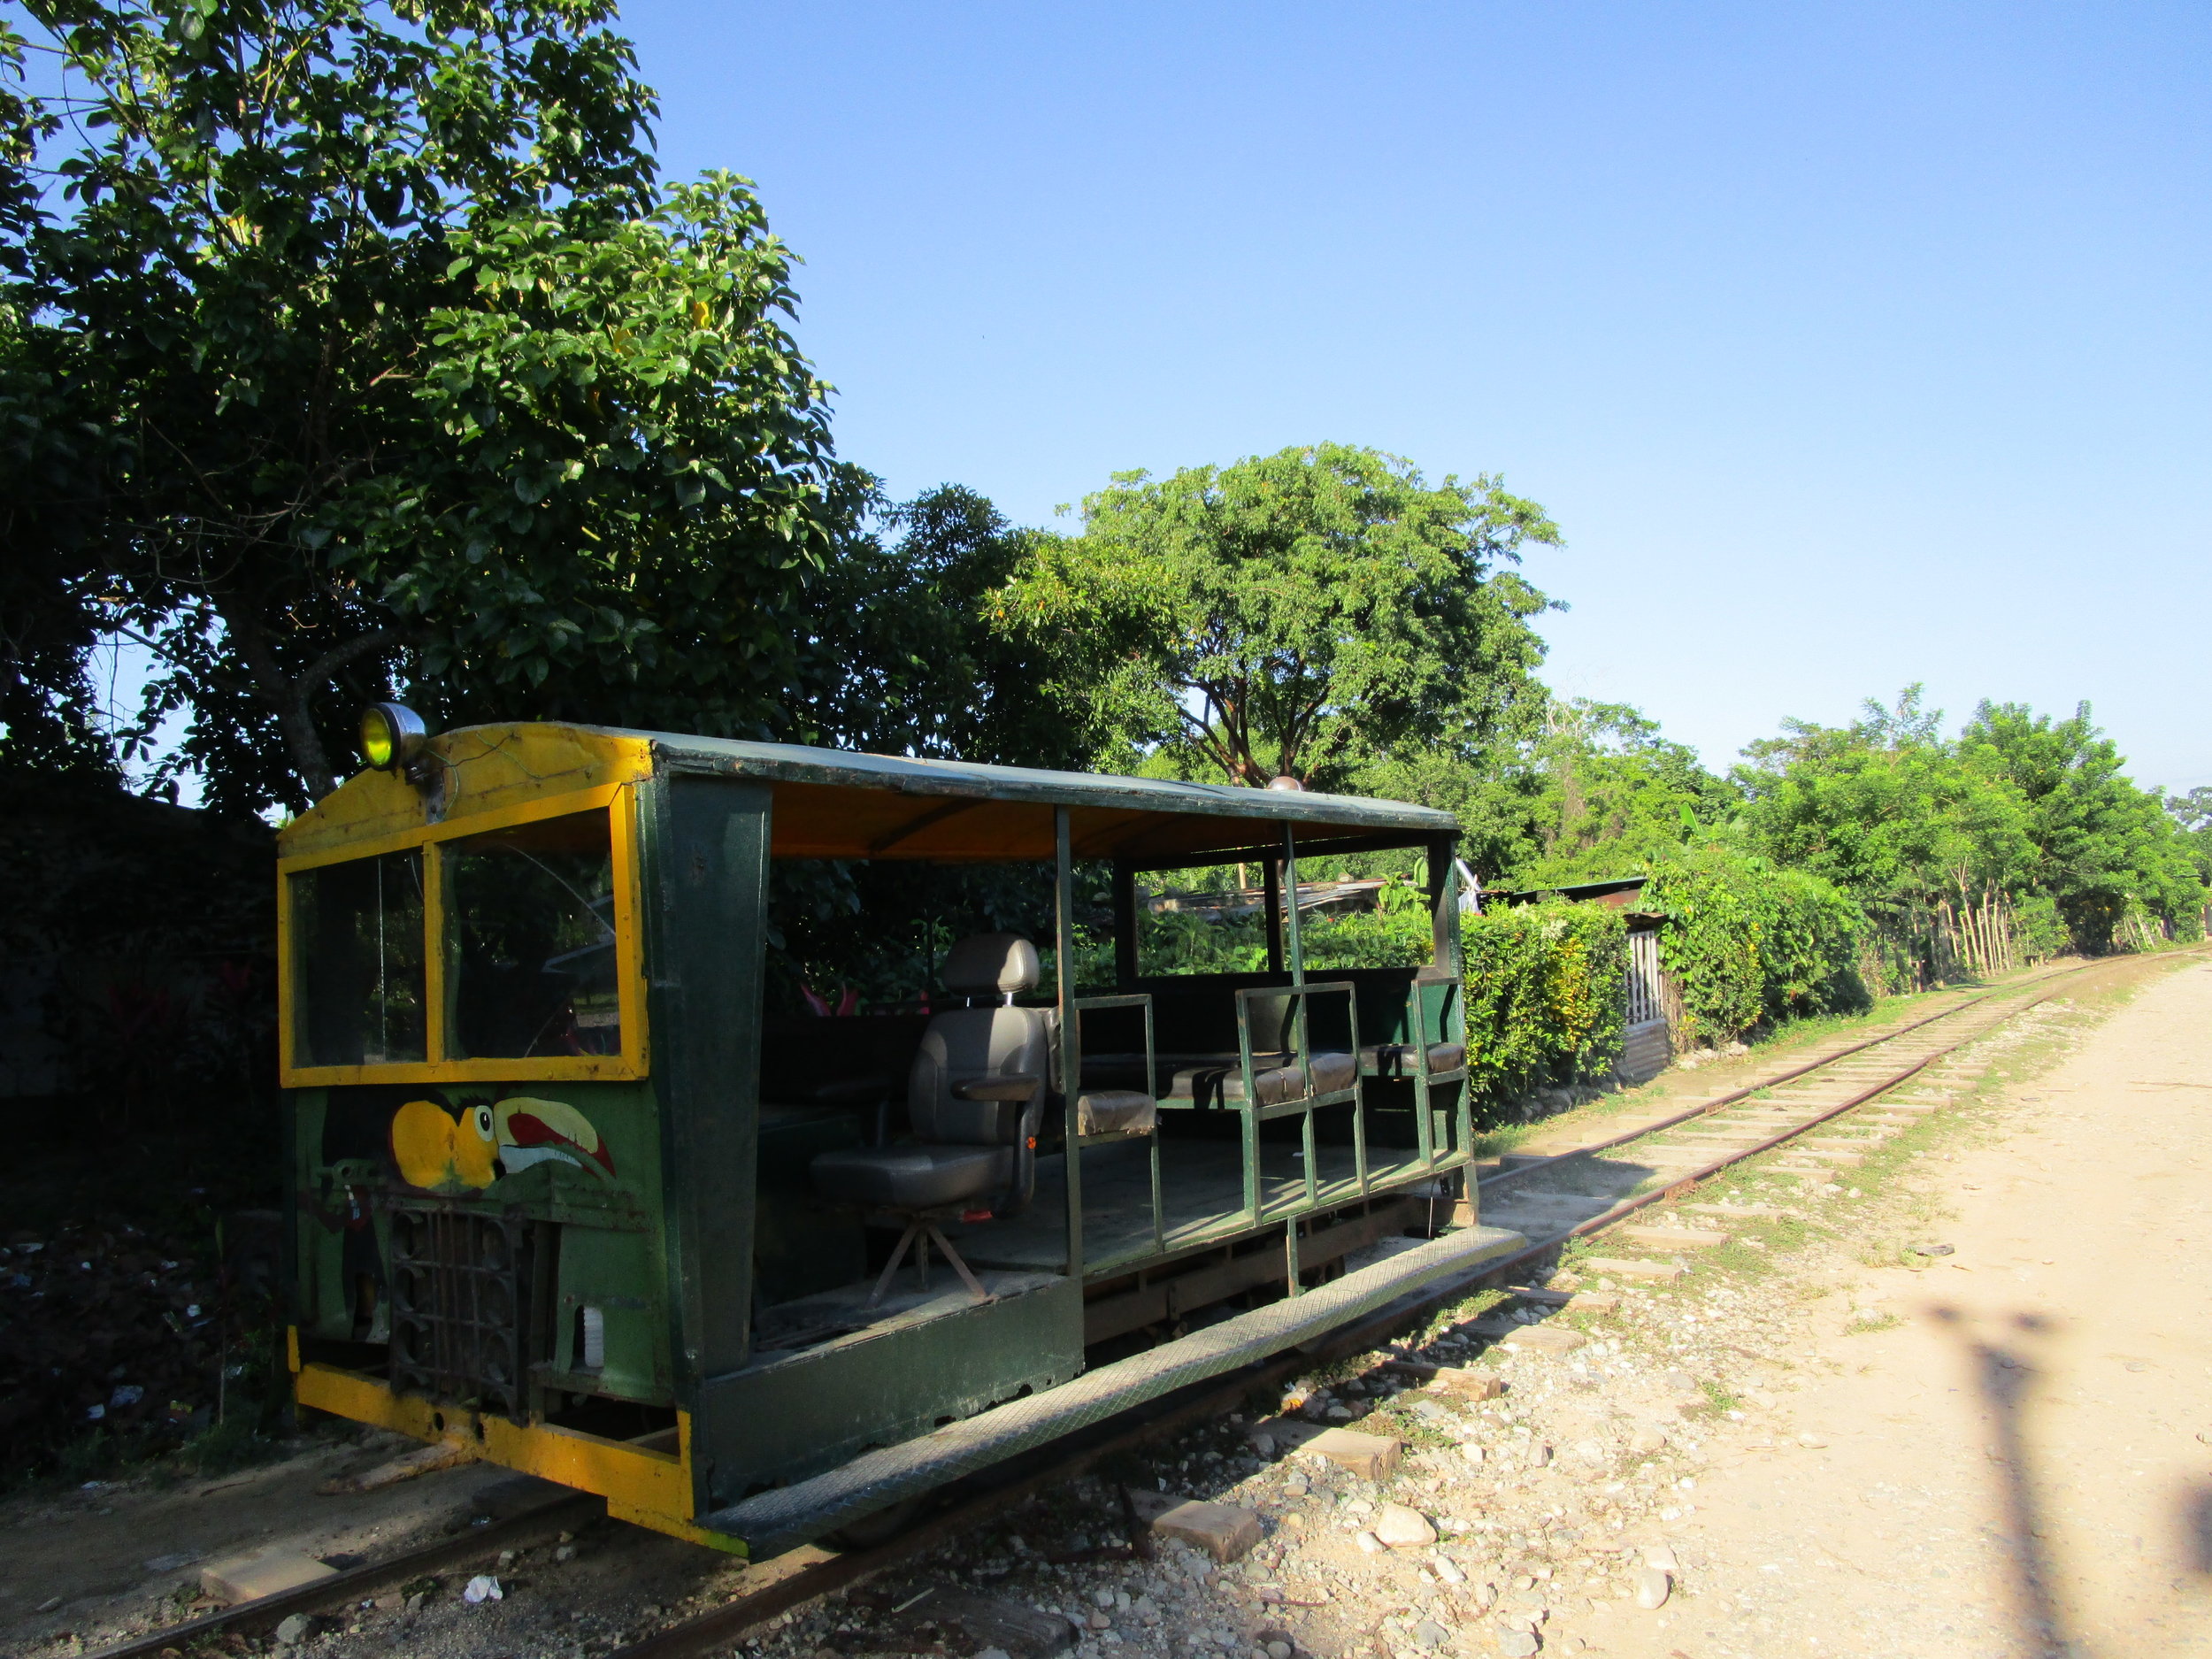 Railroad car into Cuero y Salado Wildlife Refuge